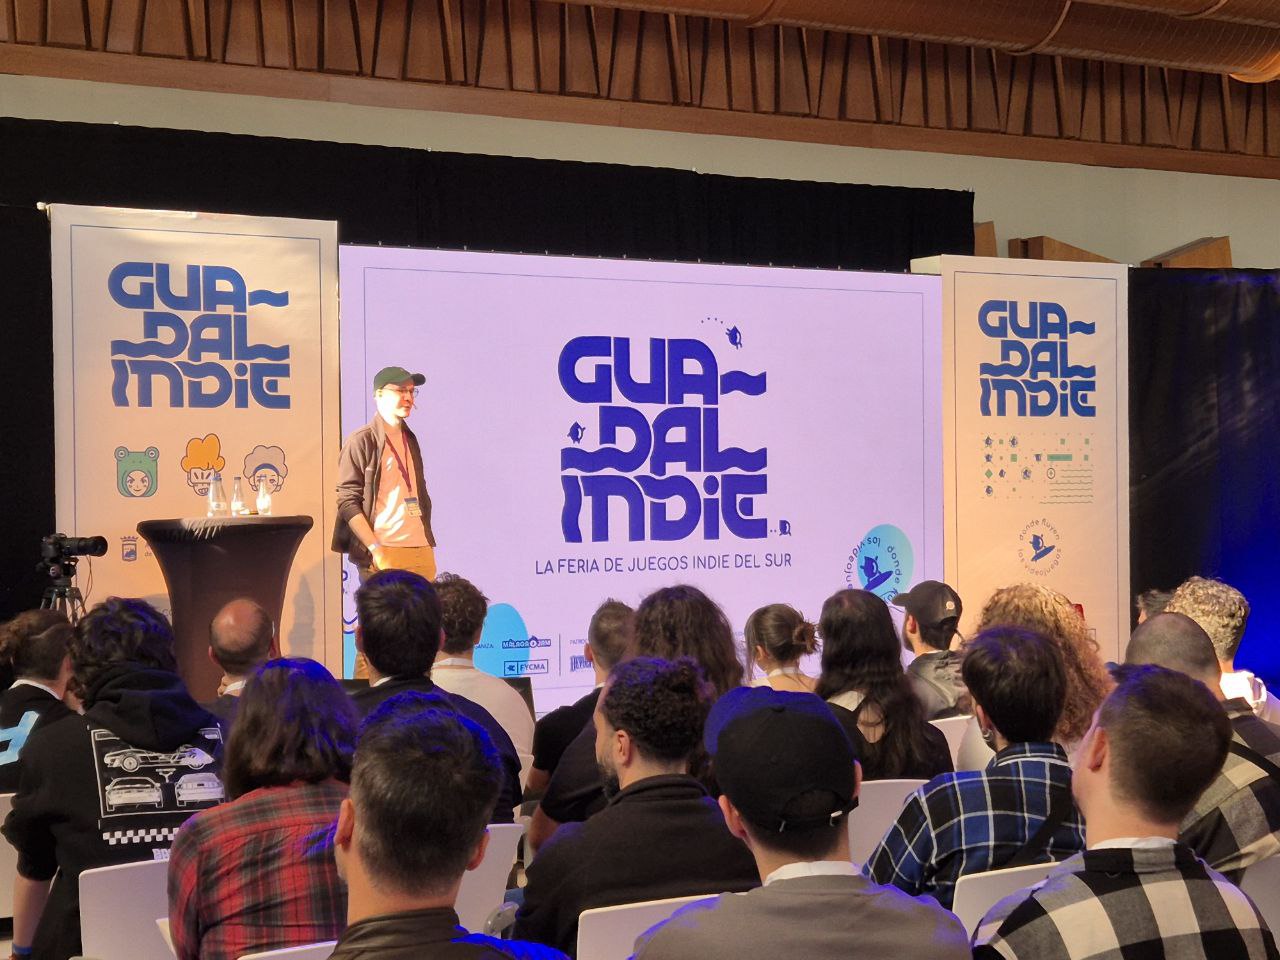 Crónica de Guadalindie, un evento de videojuegos sorprendente